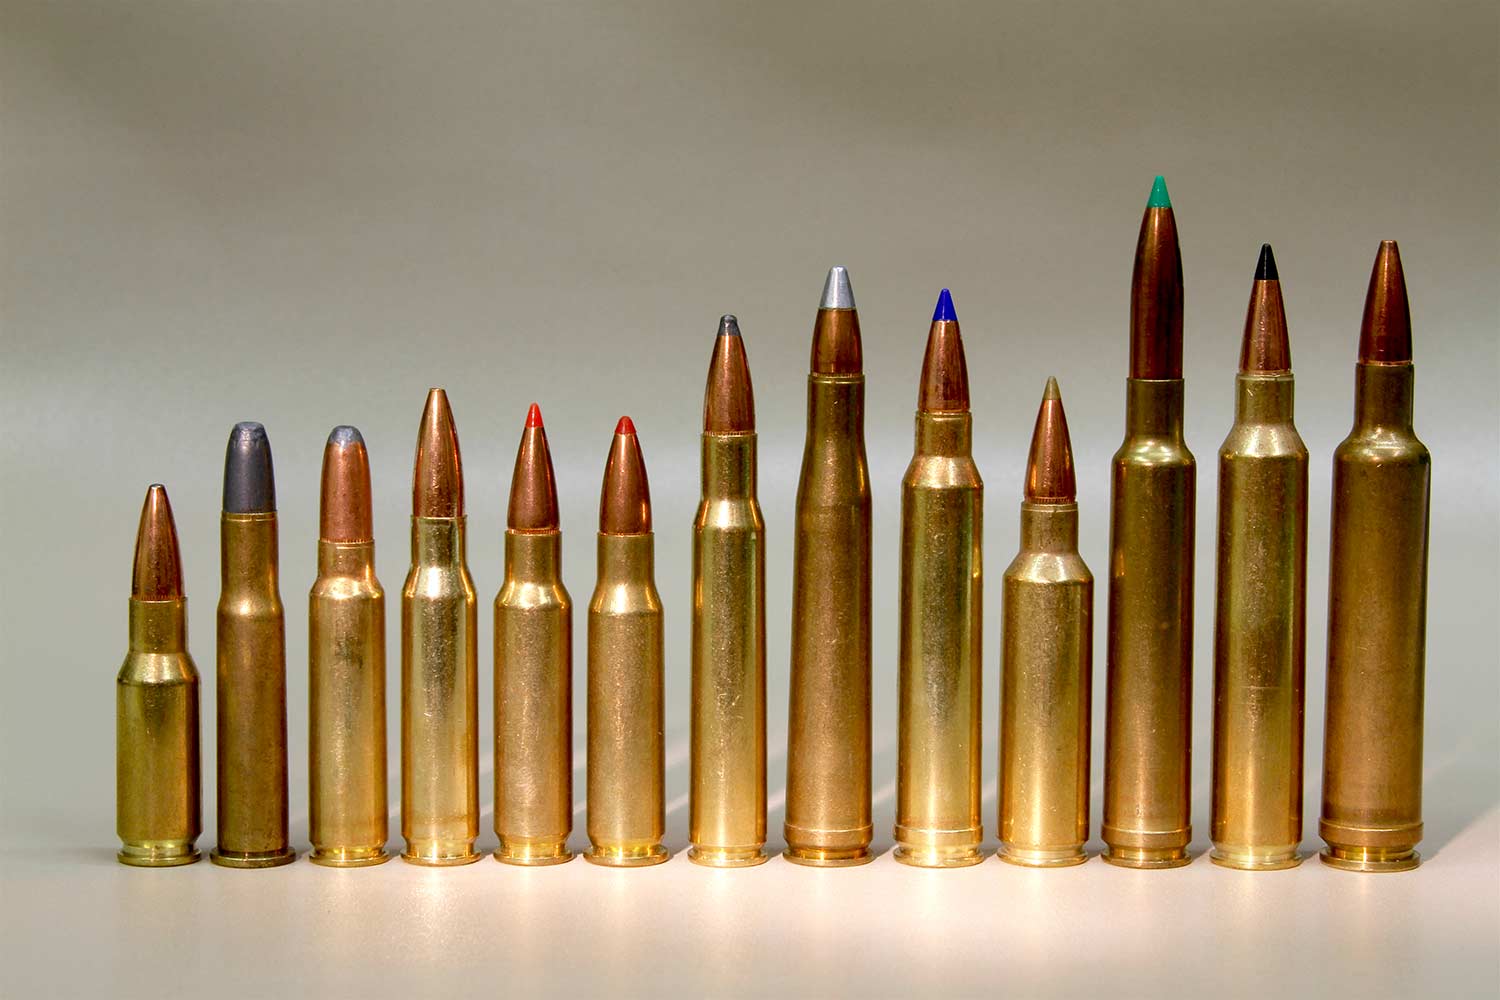 Rifle Ammunition Sizes Comparison Chart